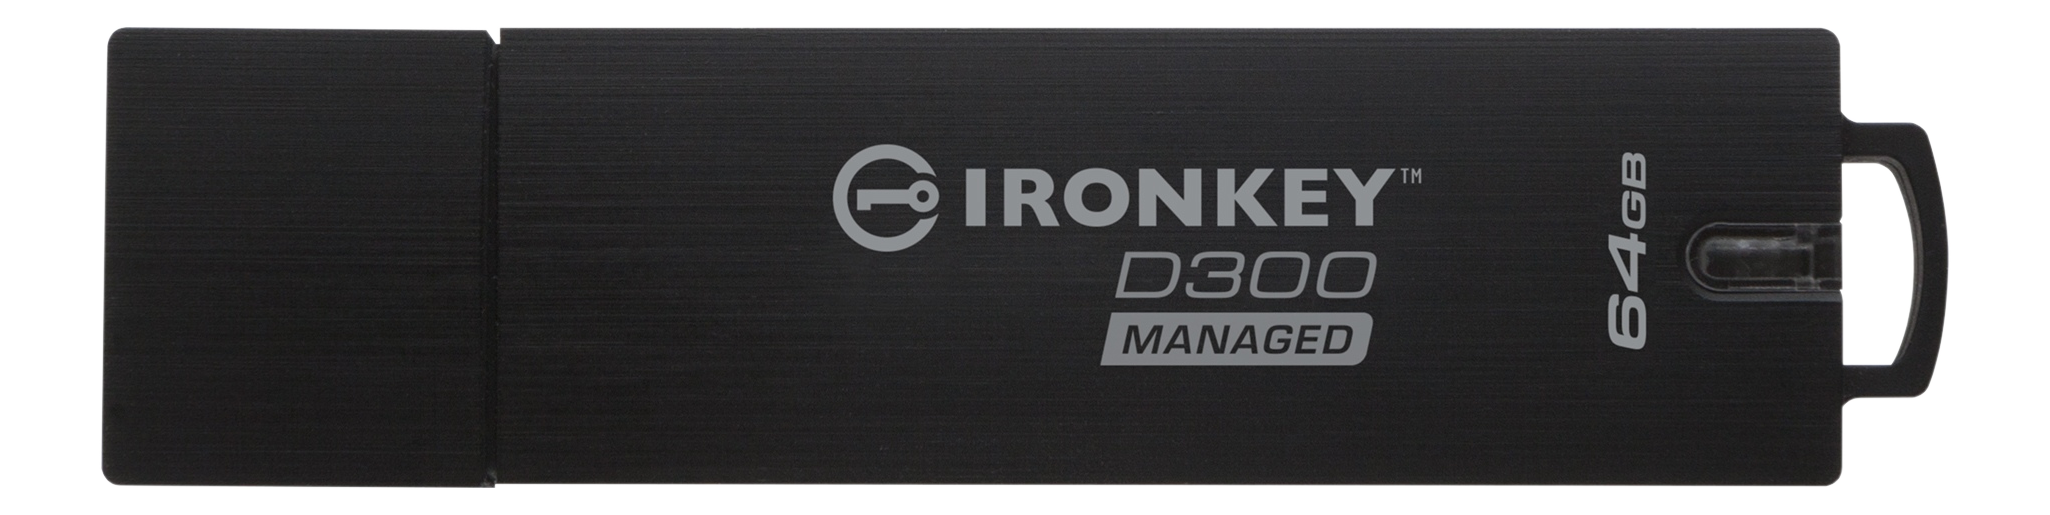 KINGSTON Ironkey D300 - Chiavetta USB  (64 GB, Nero)